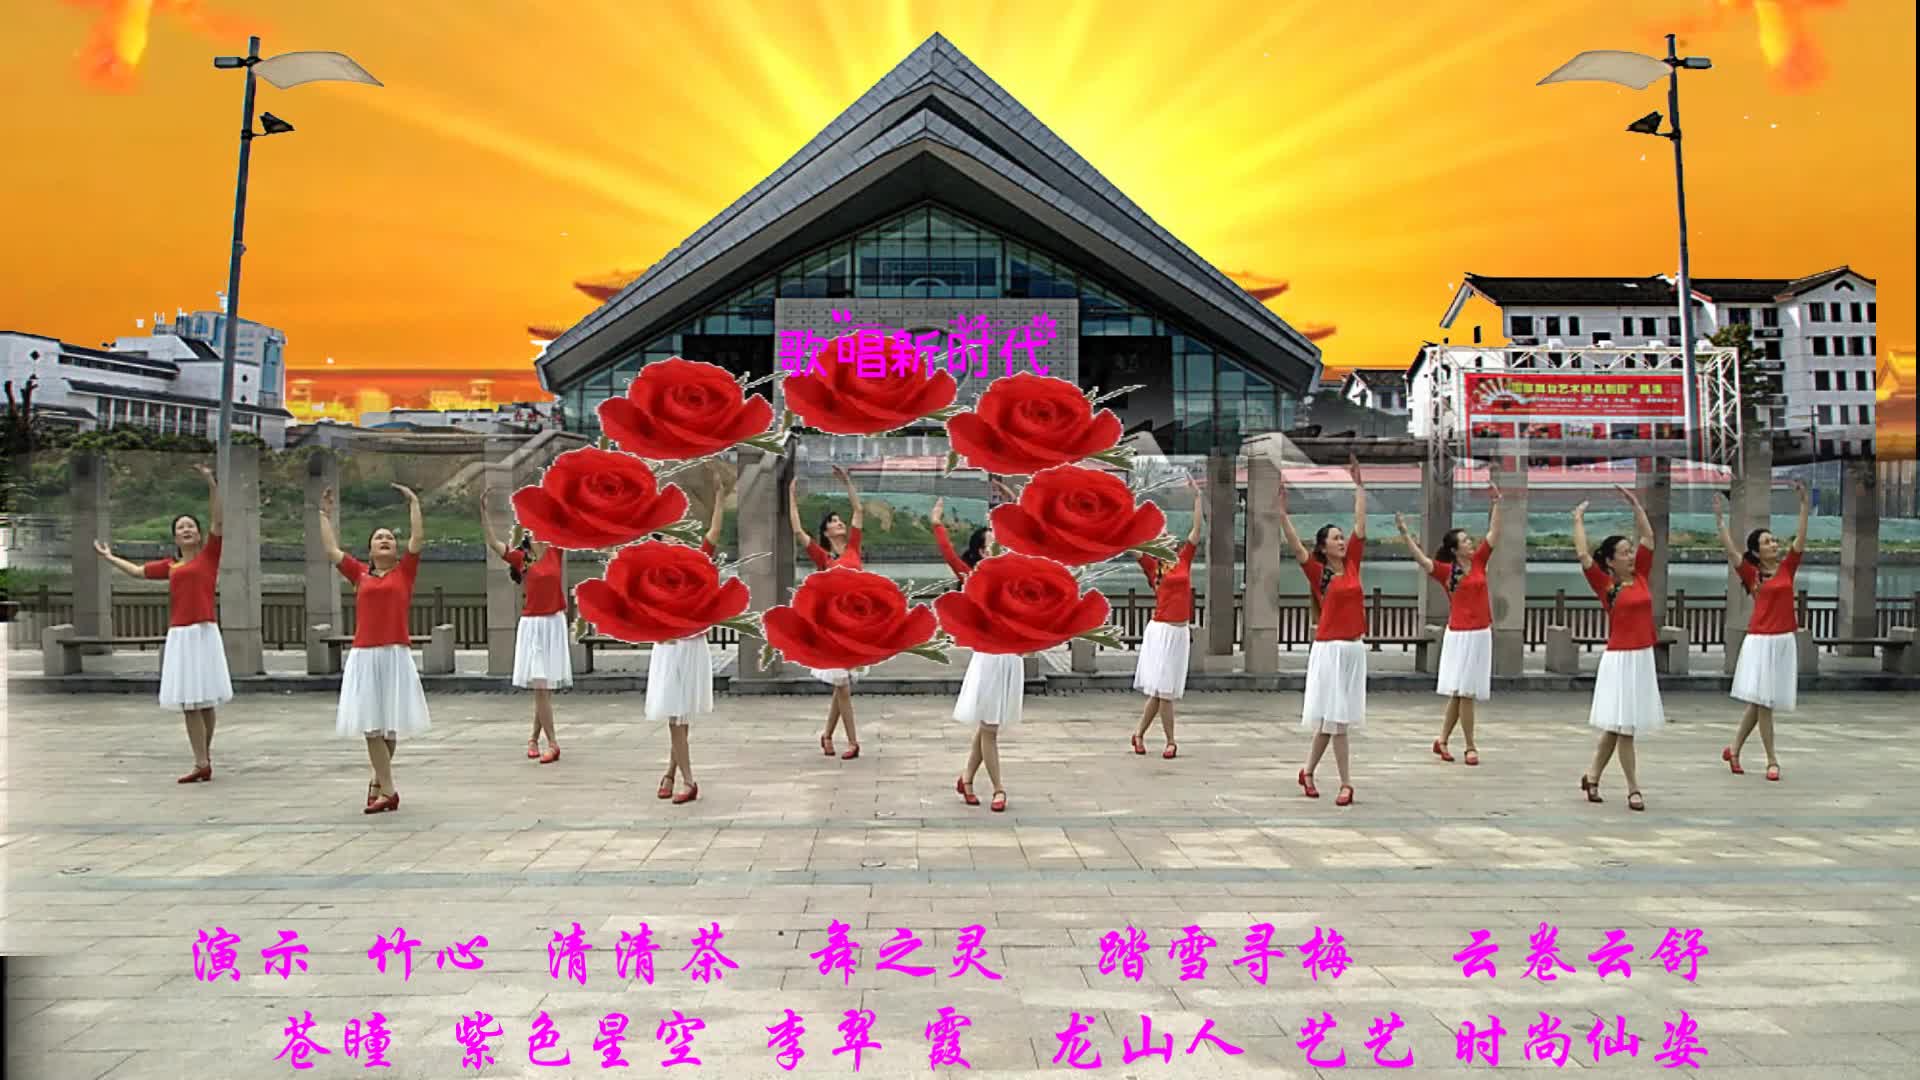 安徽安庆霓裳广场舞歌唱新时代-团队演示